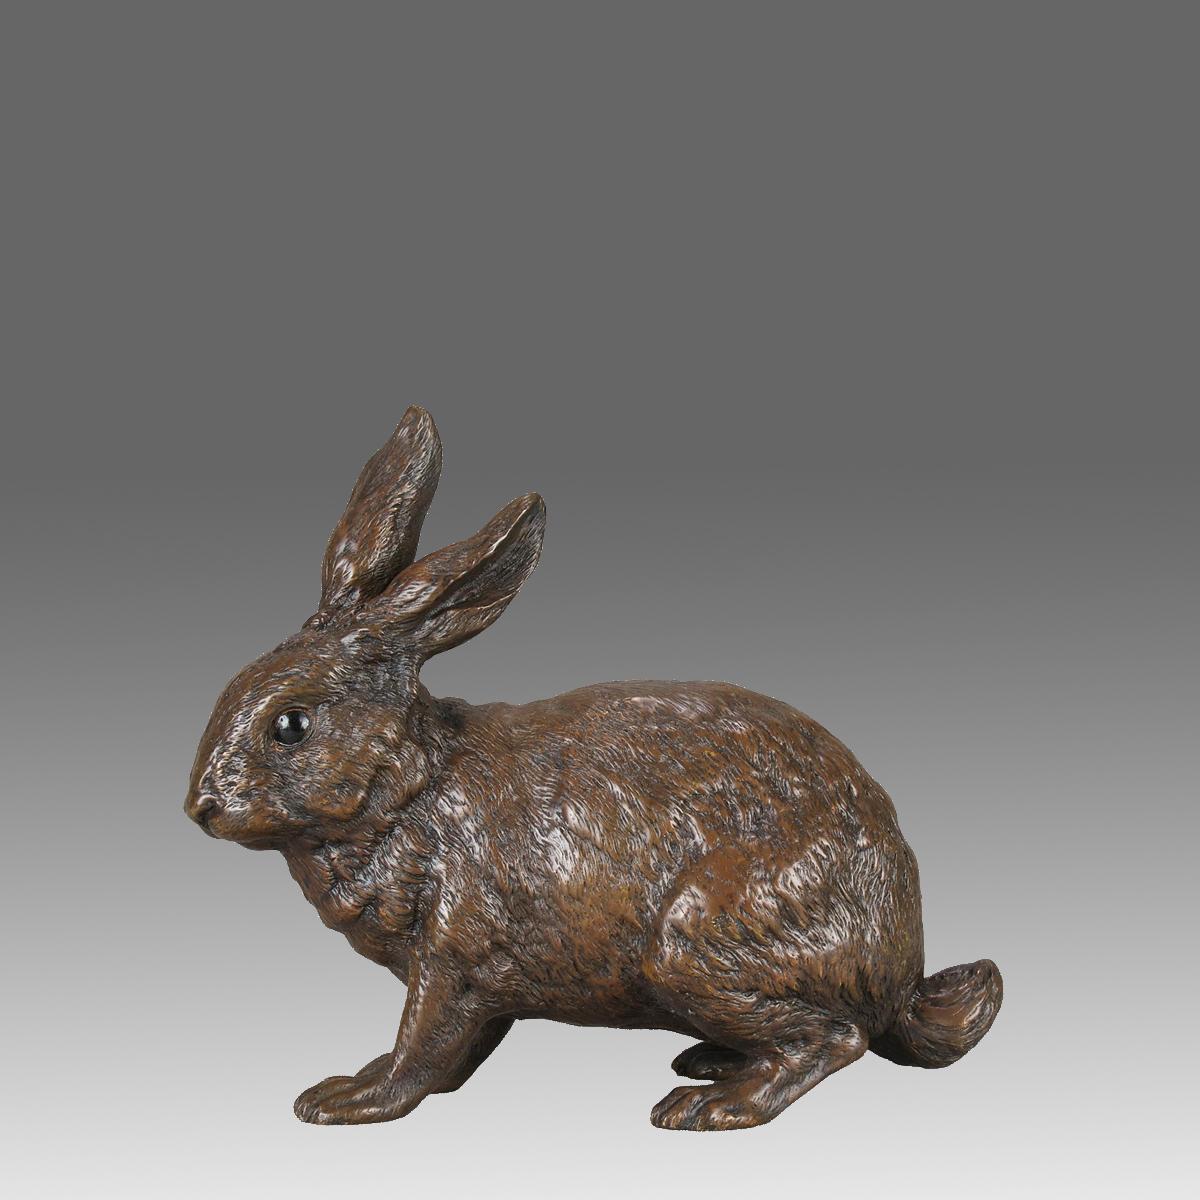 Charmante étude en bronze autrichien du début du 20e siècle, peinte à froid, représentant un lapin avec de très belles couleurs naturelles et de bons détails de surface ciselés à la main. Signé avec le 